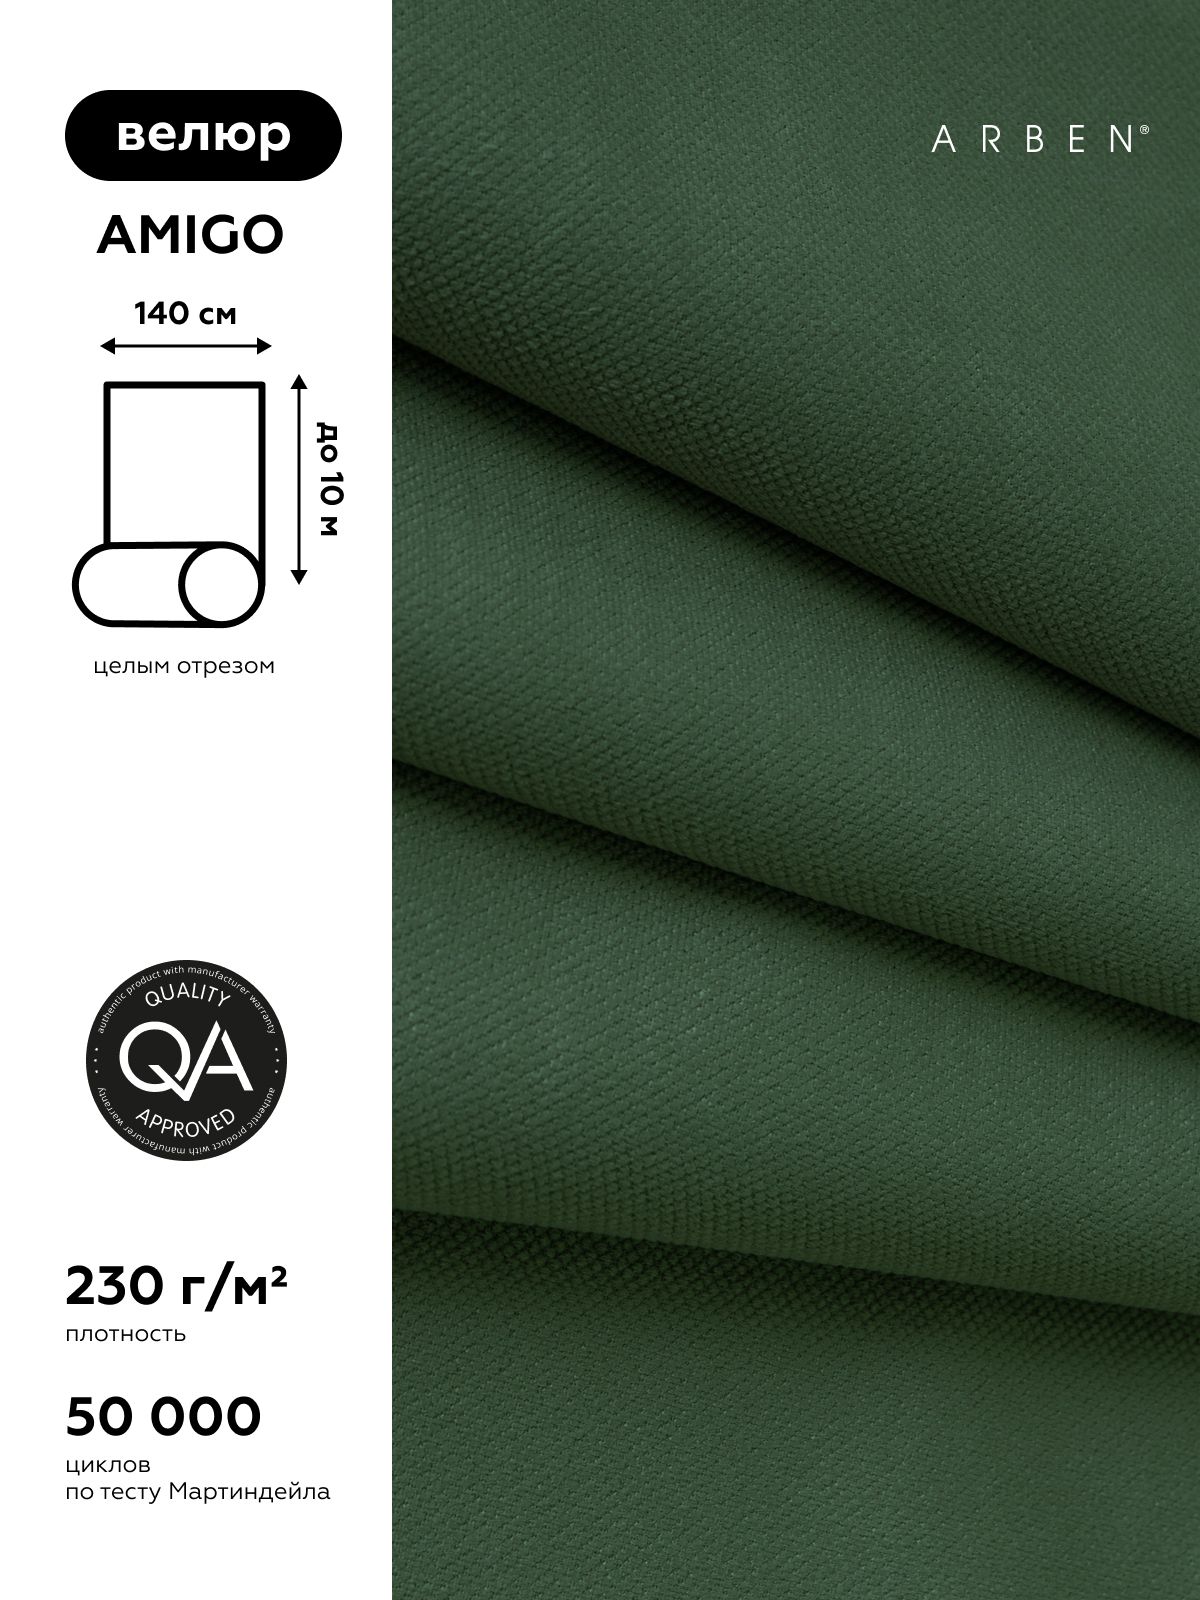 Amigo велюр. Велюр amigo Green. Амиго Грин ткань. Ткань Амиго велюр мебельная. Амиго Грин велюр.